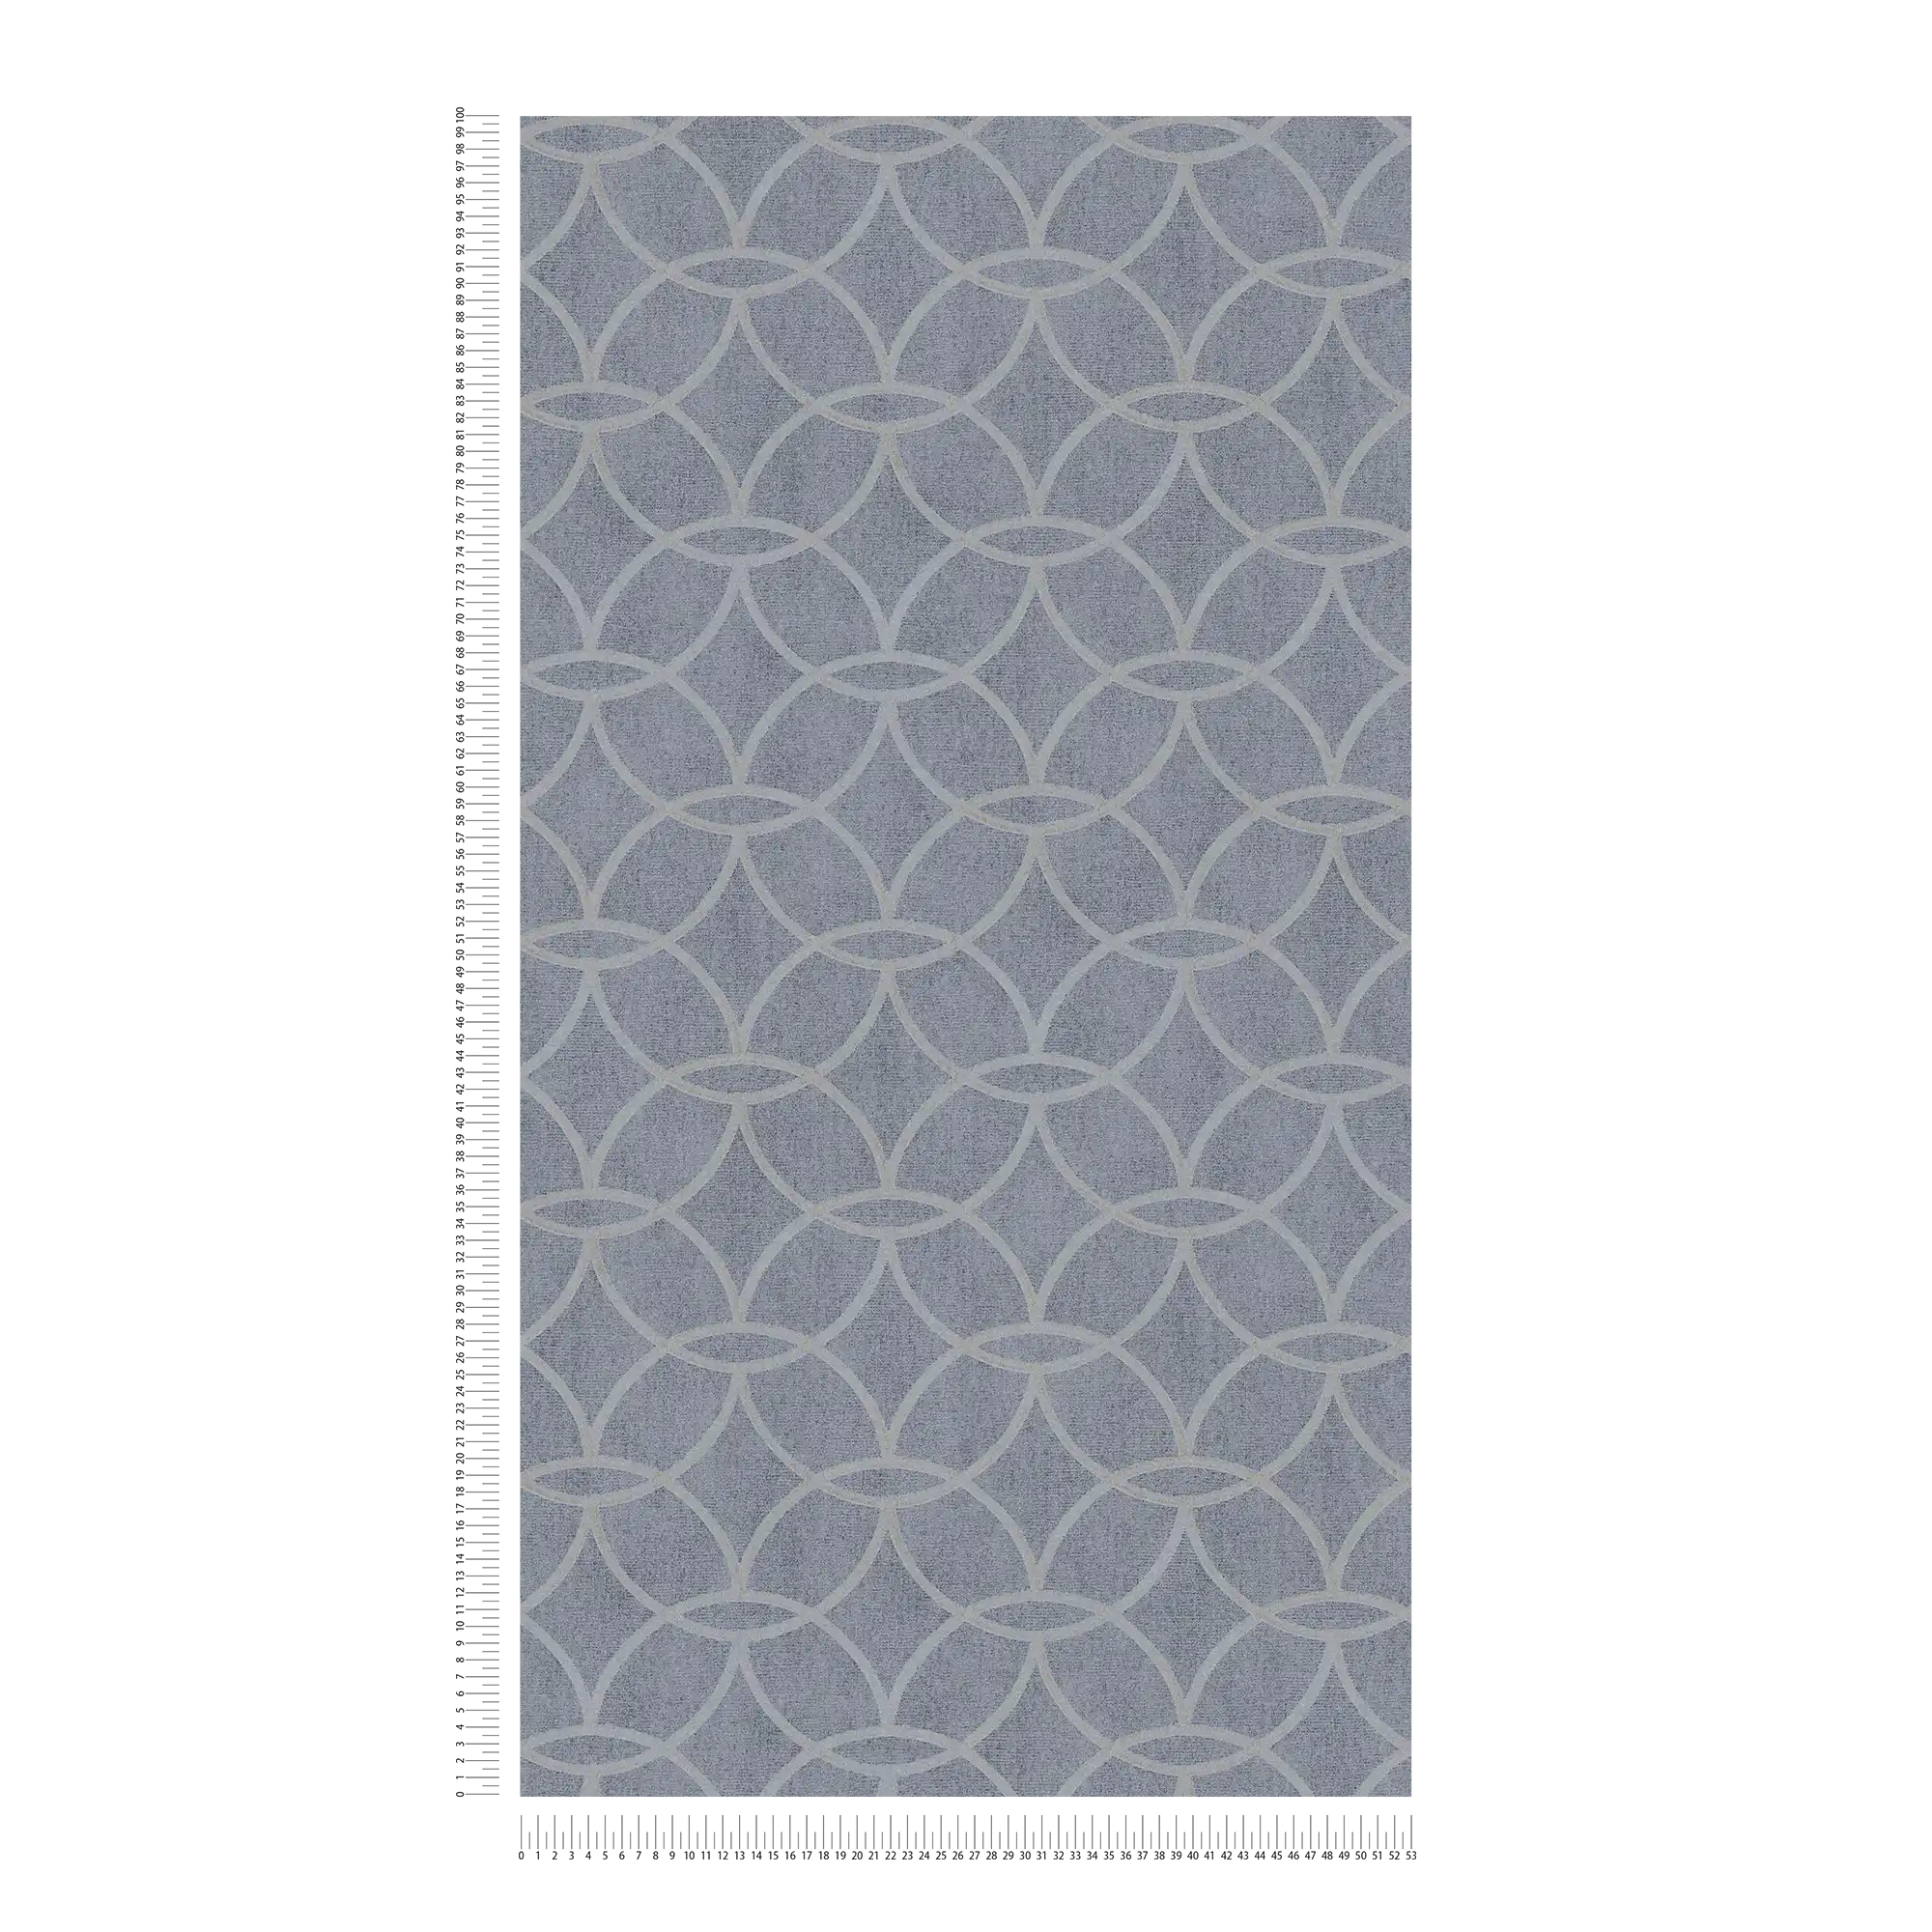             Gedessineerd vliesbehang met geometrisch design & glanseffect - blauw, grijs
        